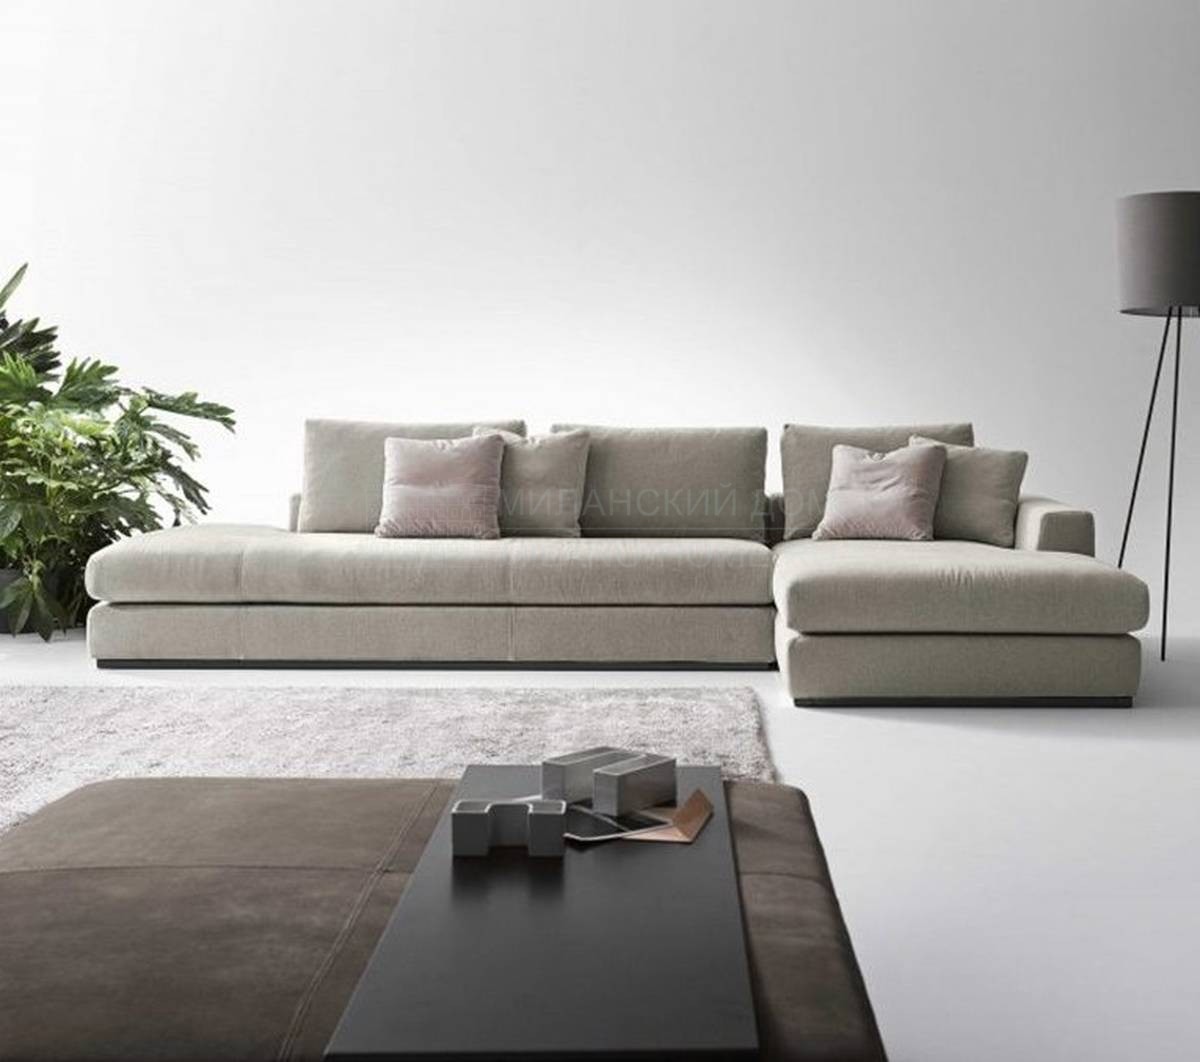 Модульный диван Bijoux из Италии фабрики DITRE ITALIA